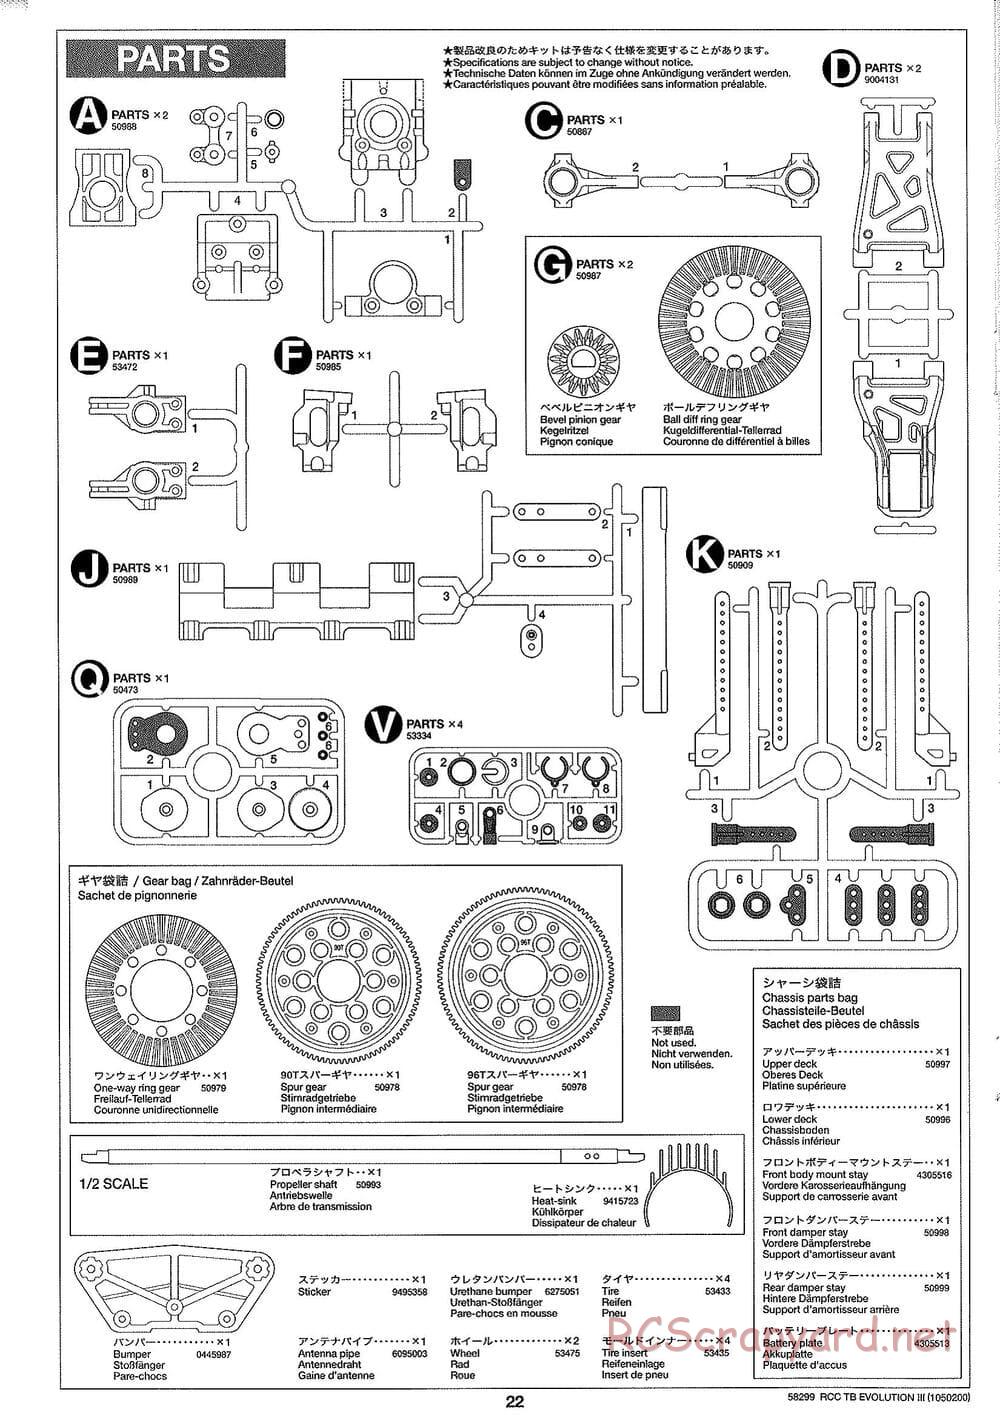 Tamiya - TB Evolution III Chassis - Manual - Page 23